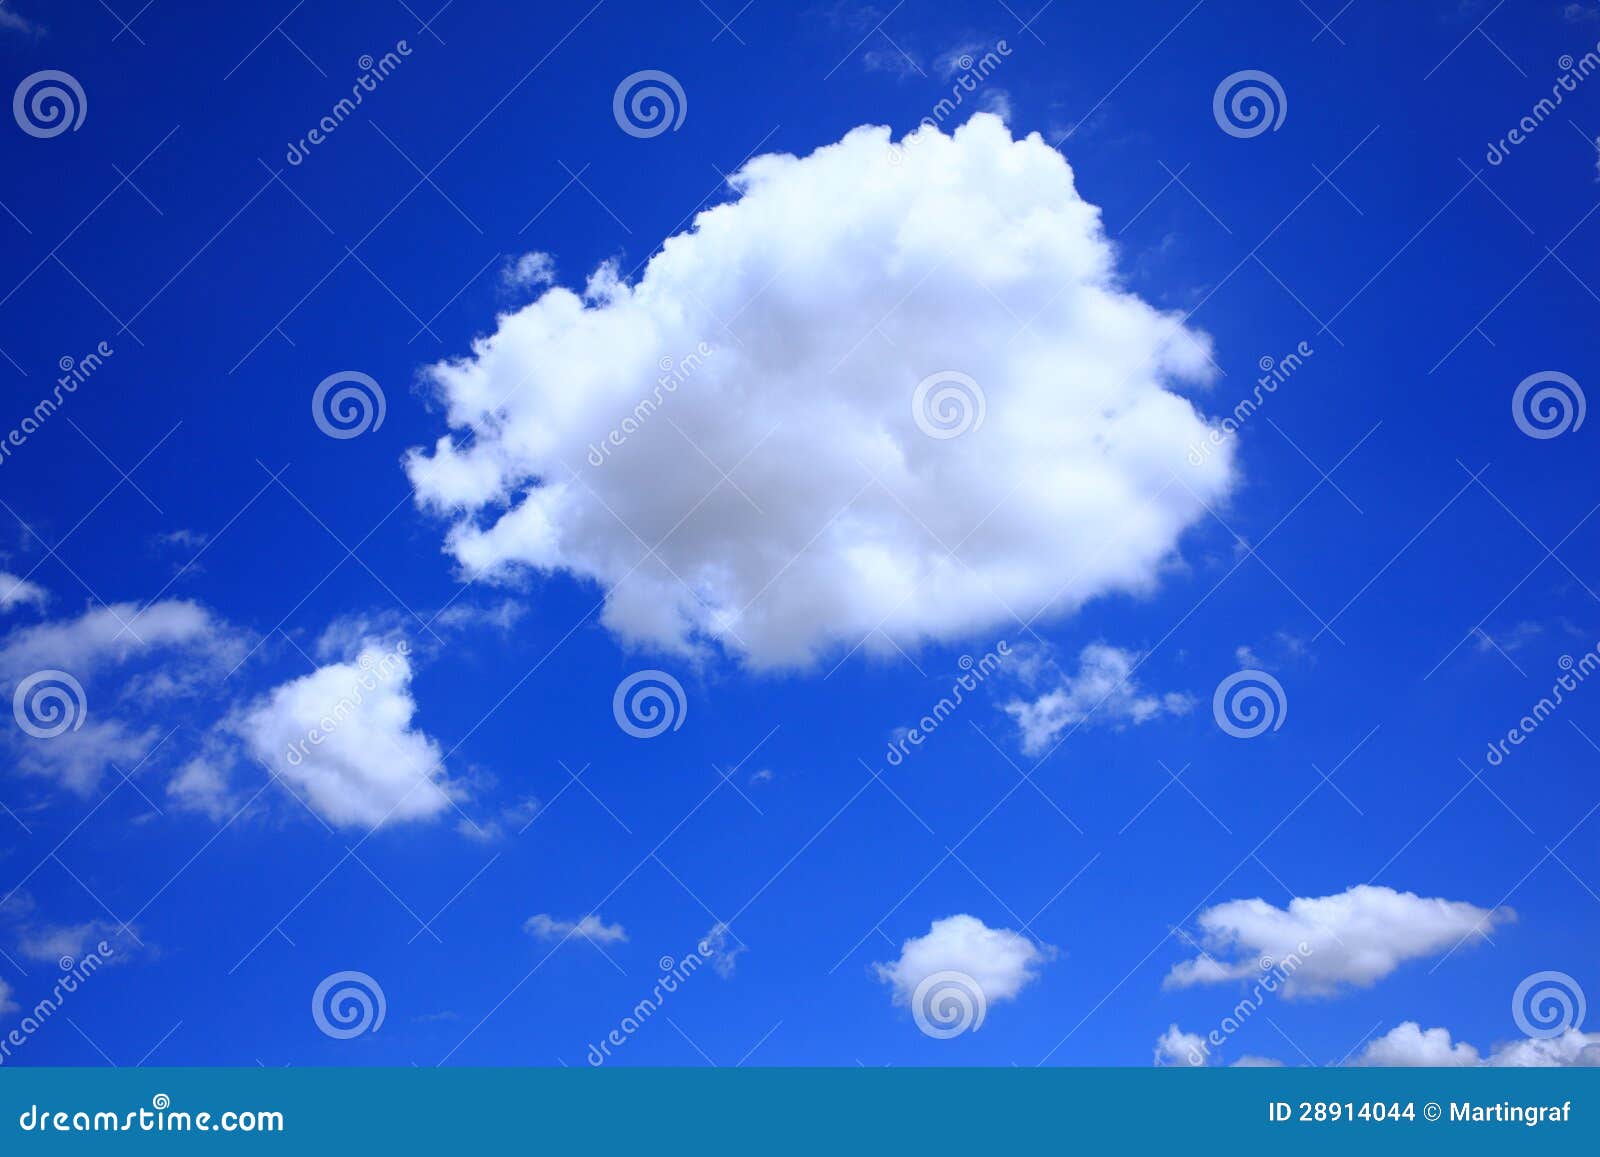 cumulus cloud in clear blue sky